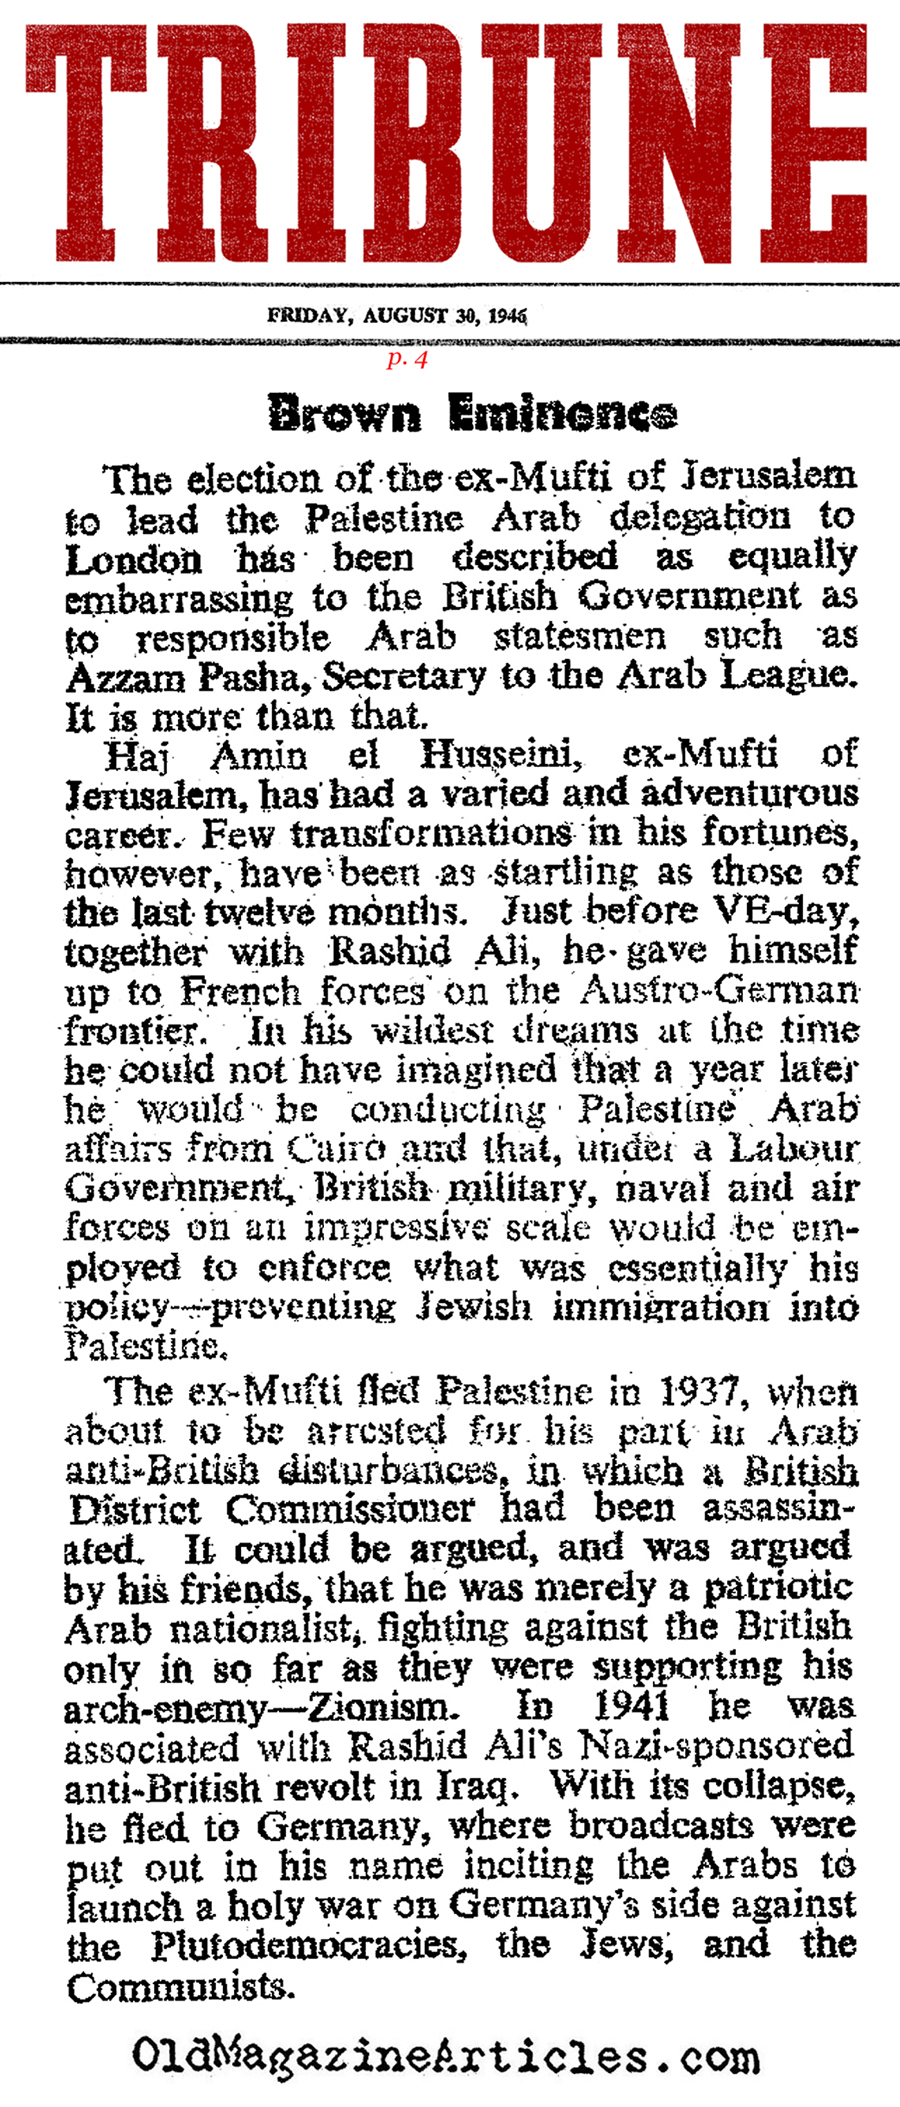 Al-Husseini After the War (Tribune, 1946)